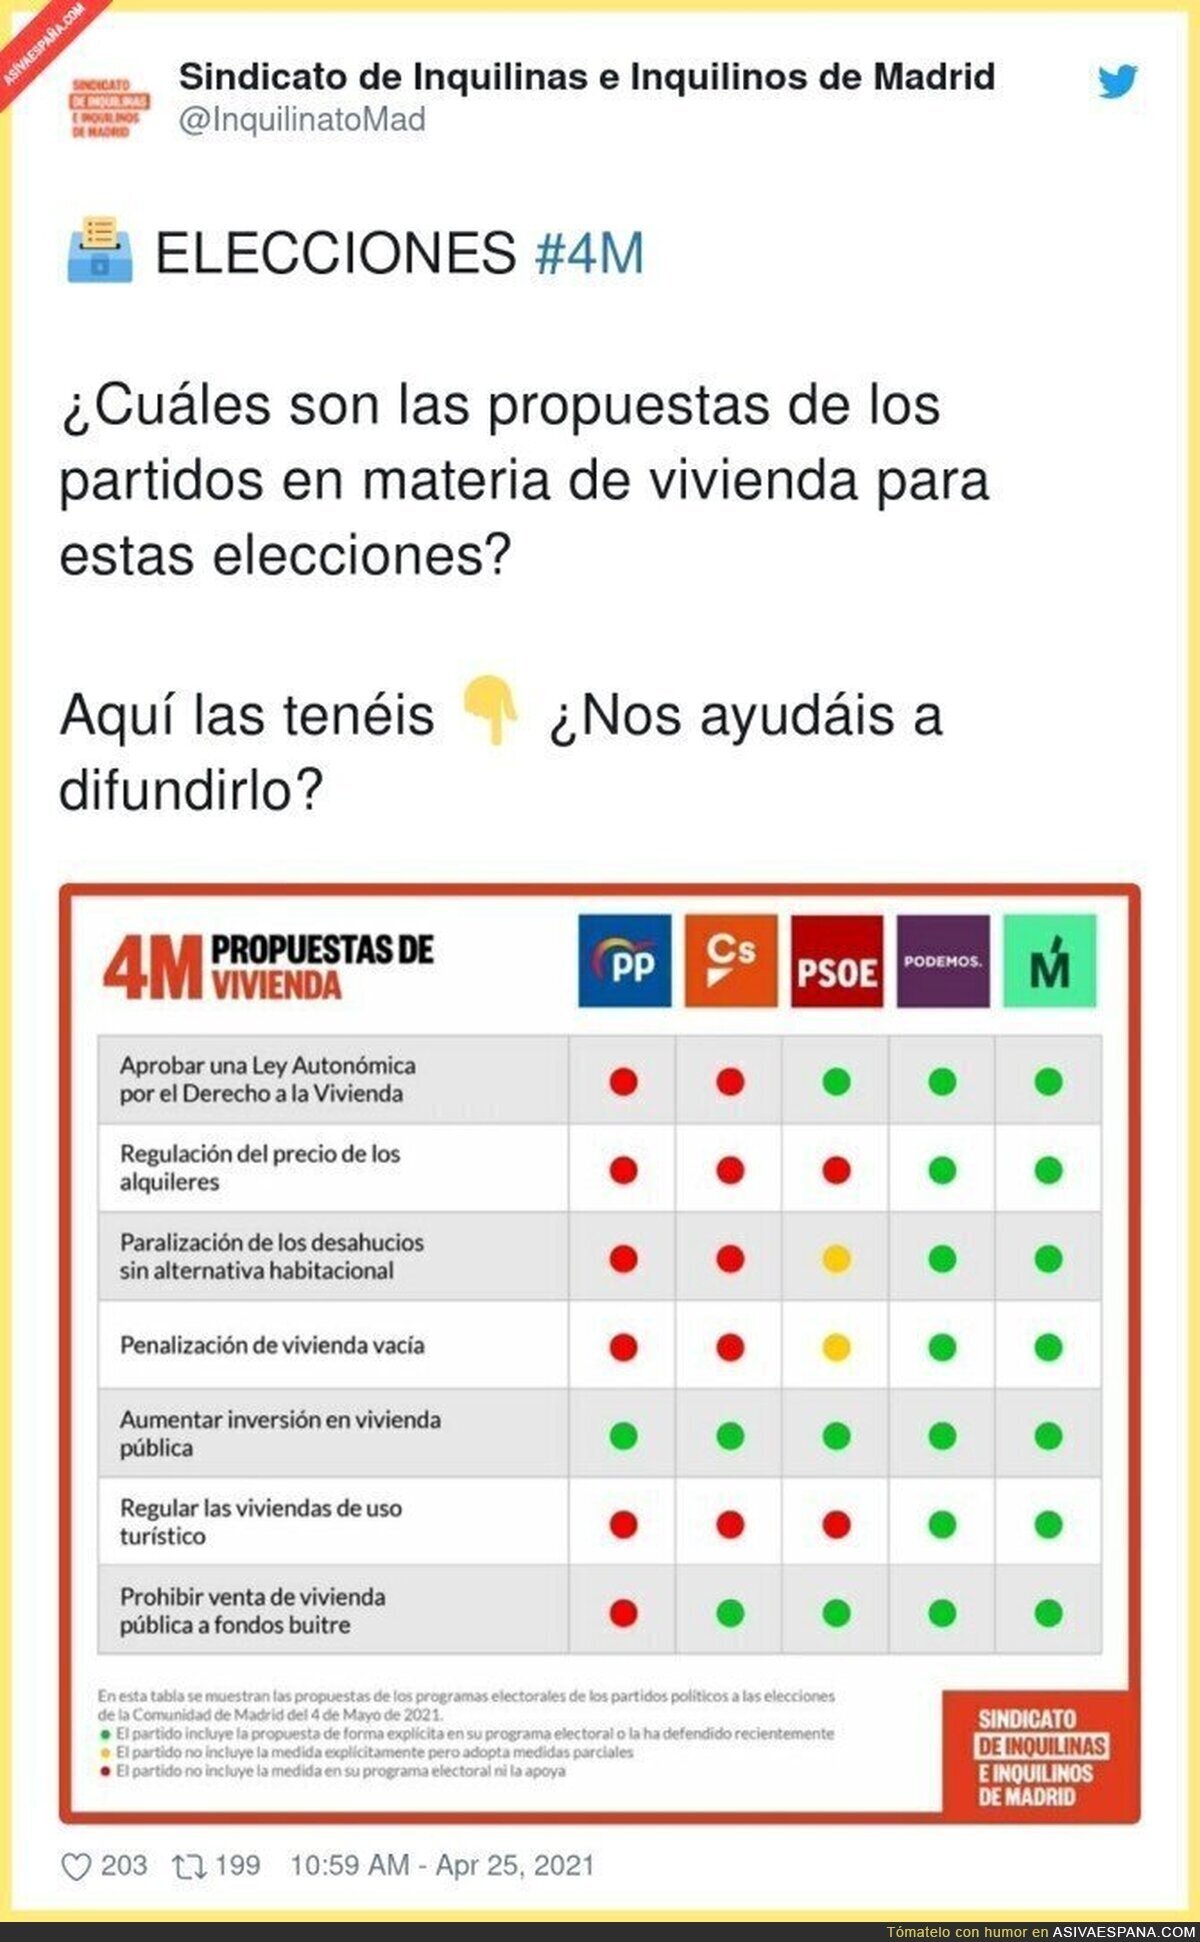 Propuestas de vivienda de los partidos políticos en Madrid